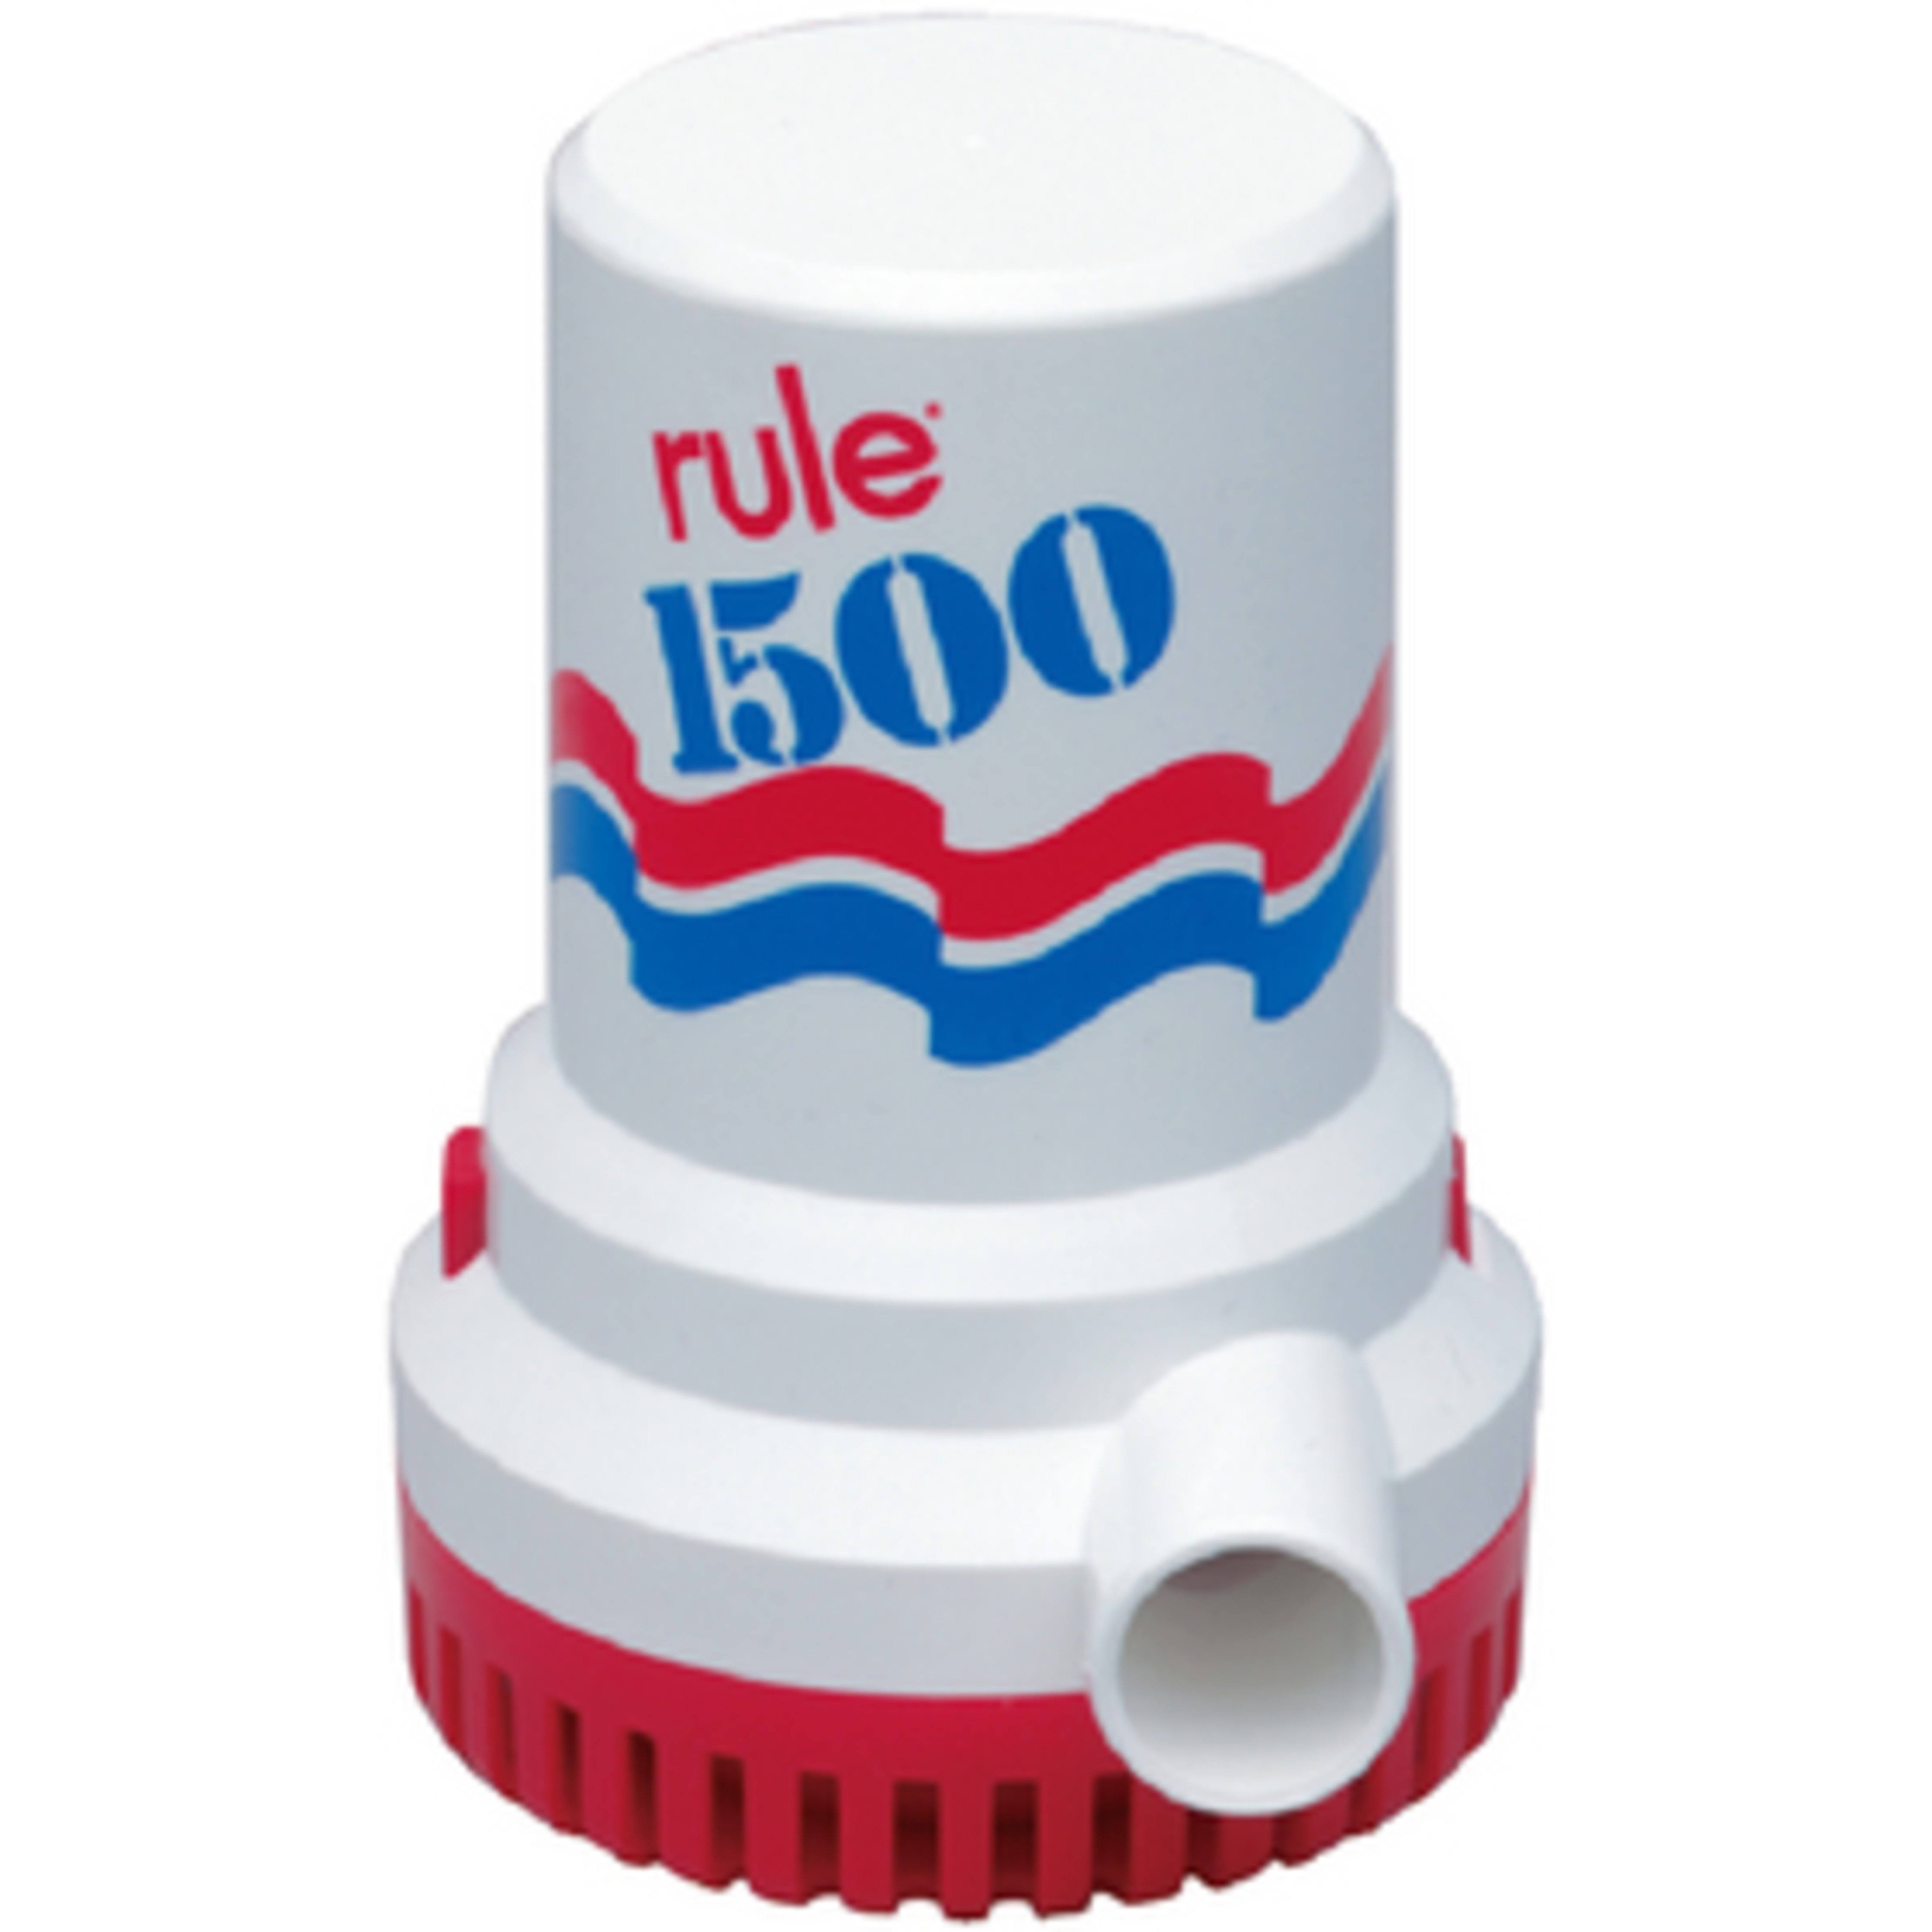 Rule 1500 Gph Non-Automatic Bilge Pump - 12V